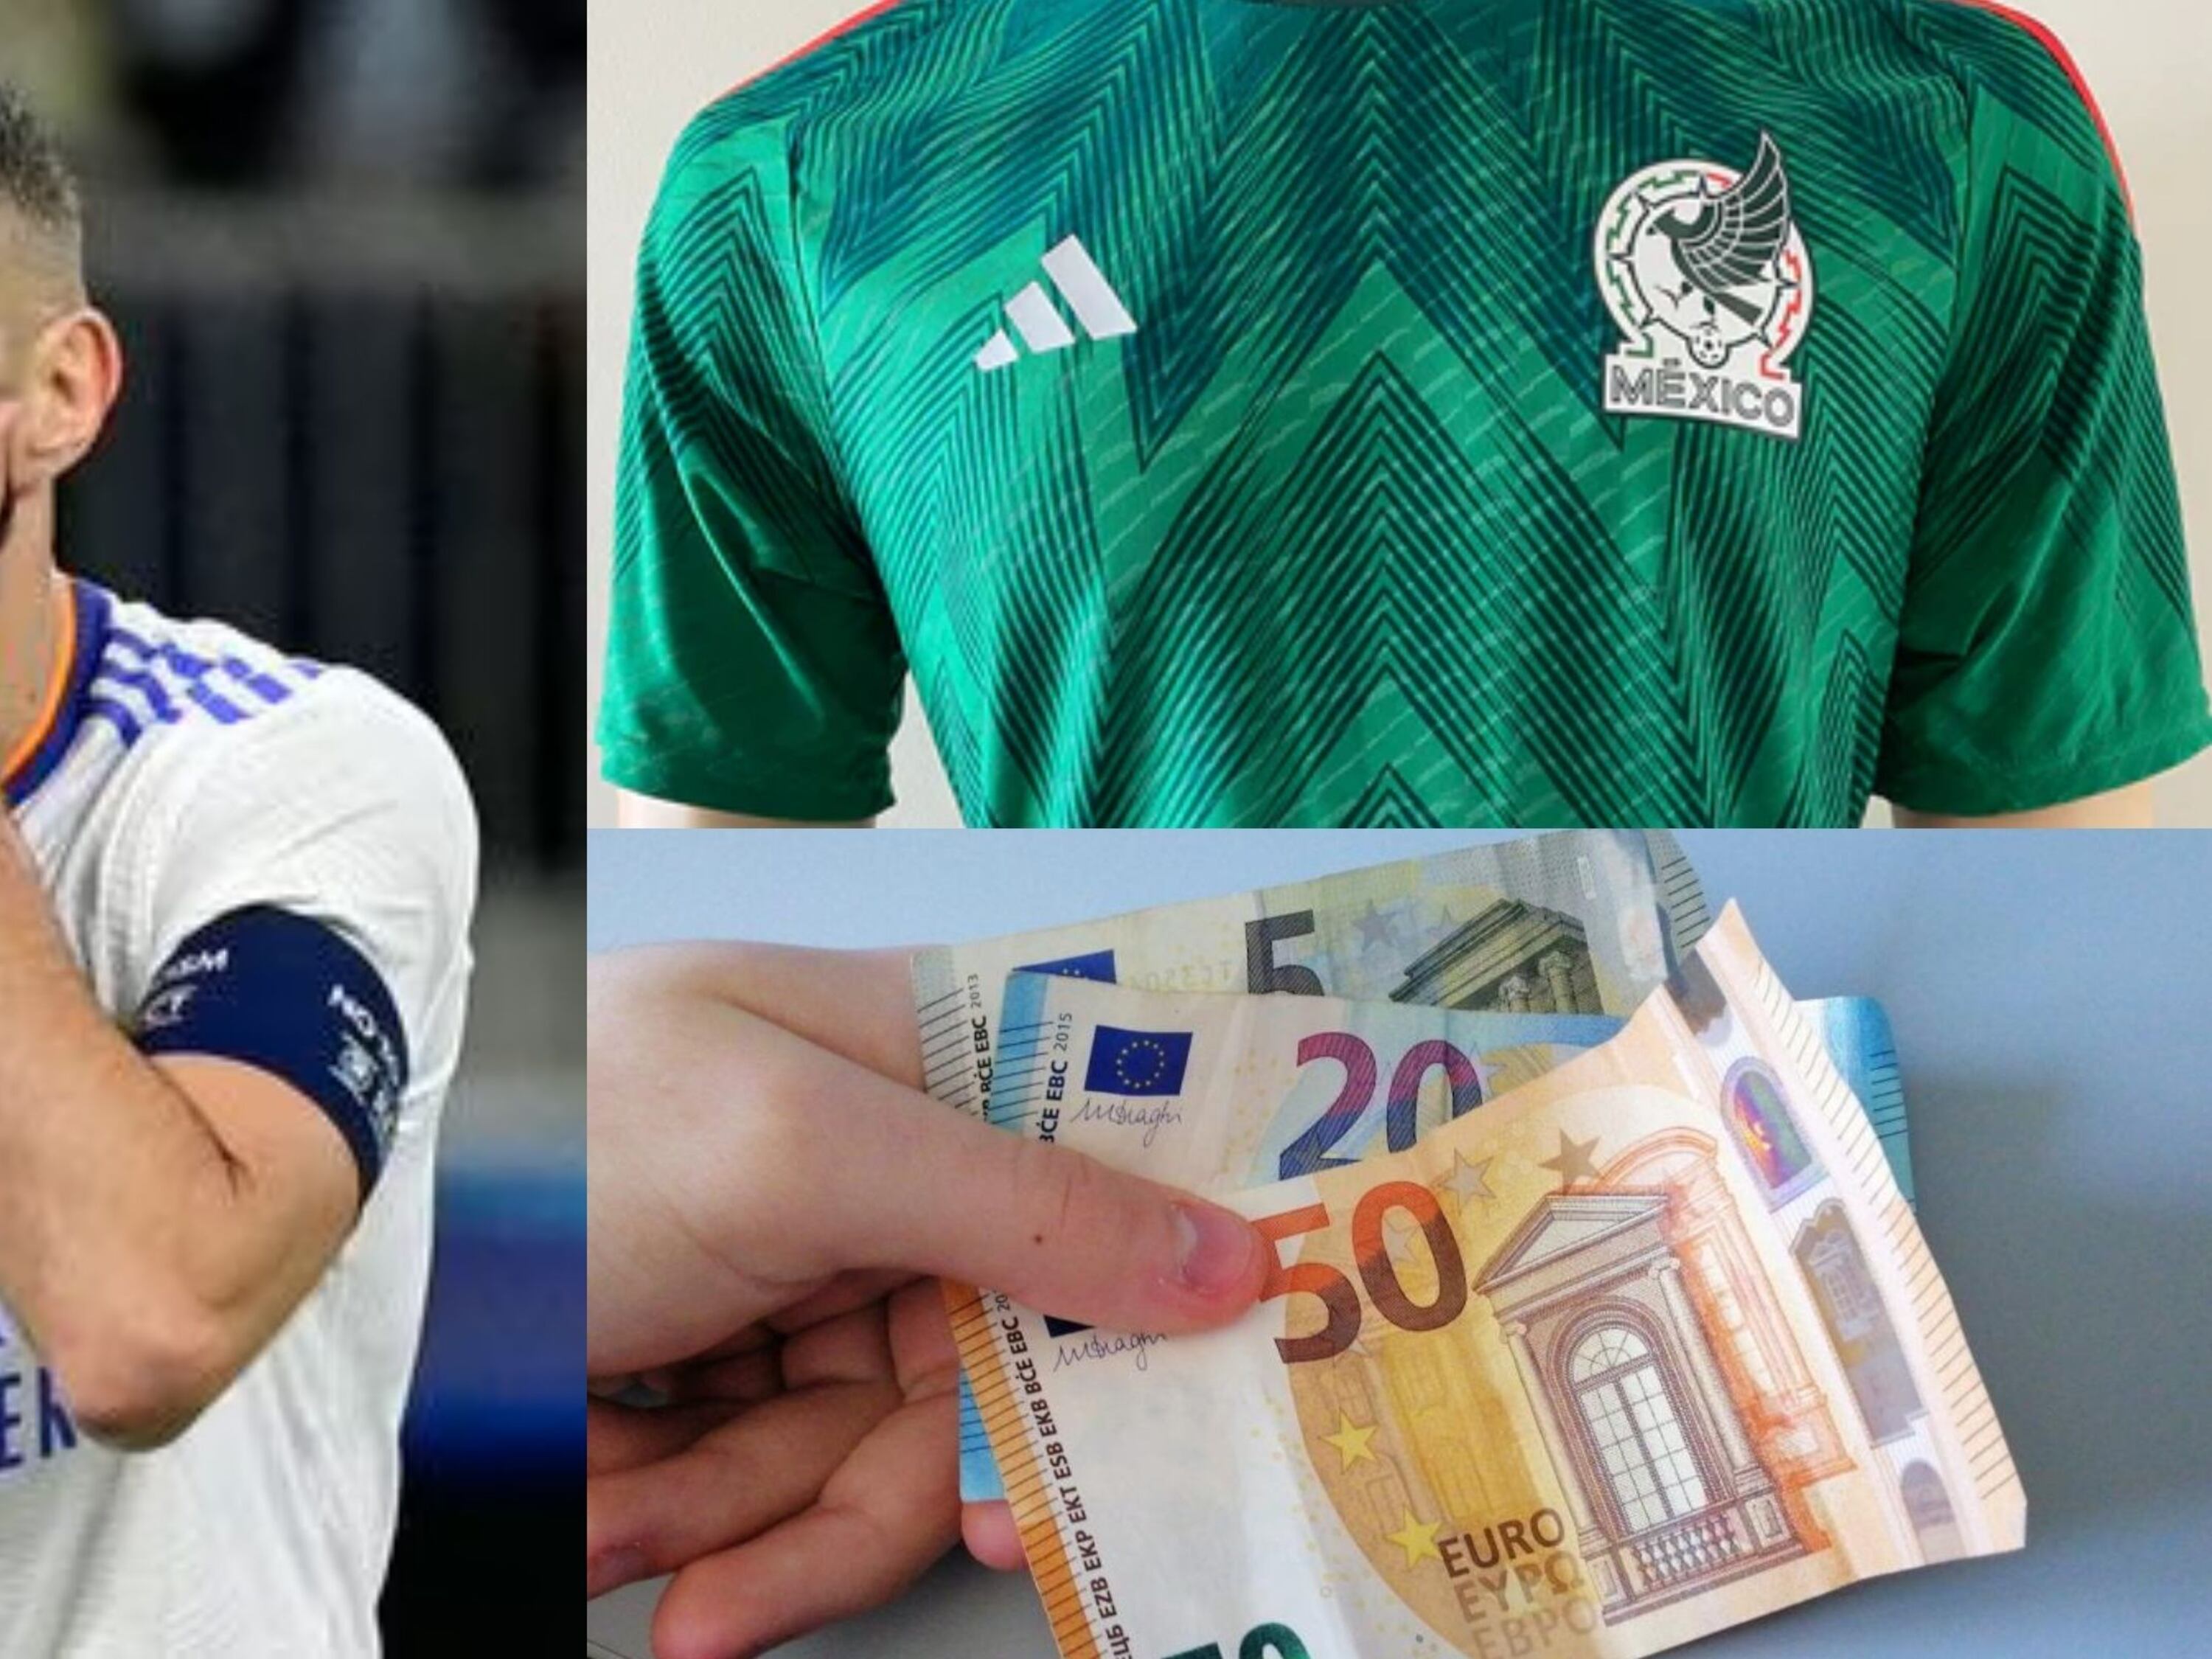 El jugador de México que bailó al Real Madrid, ahora ganaría 75 euros